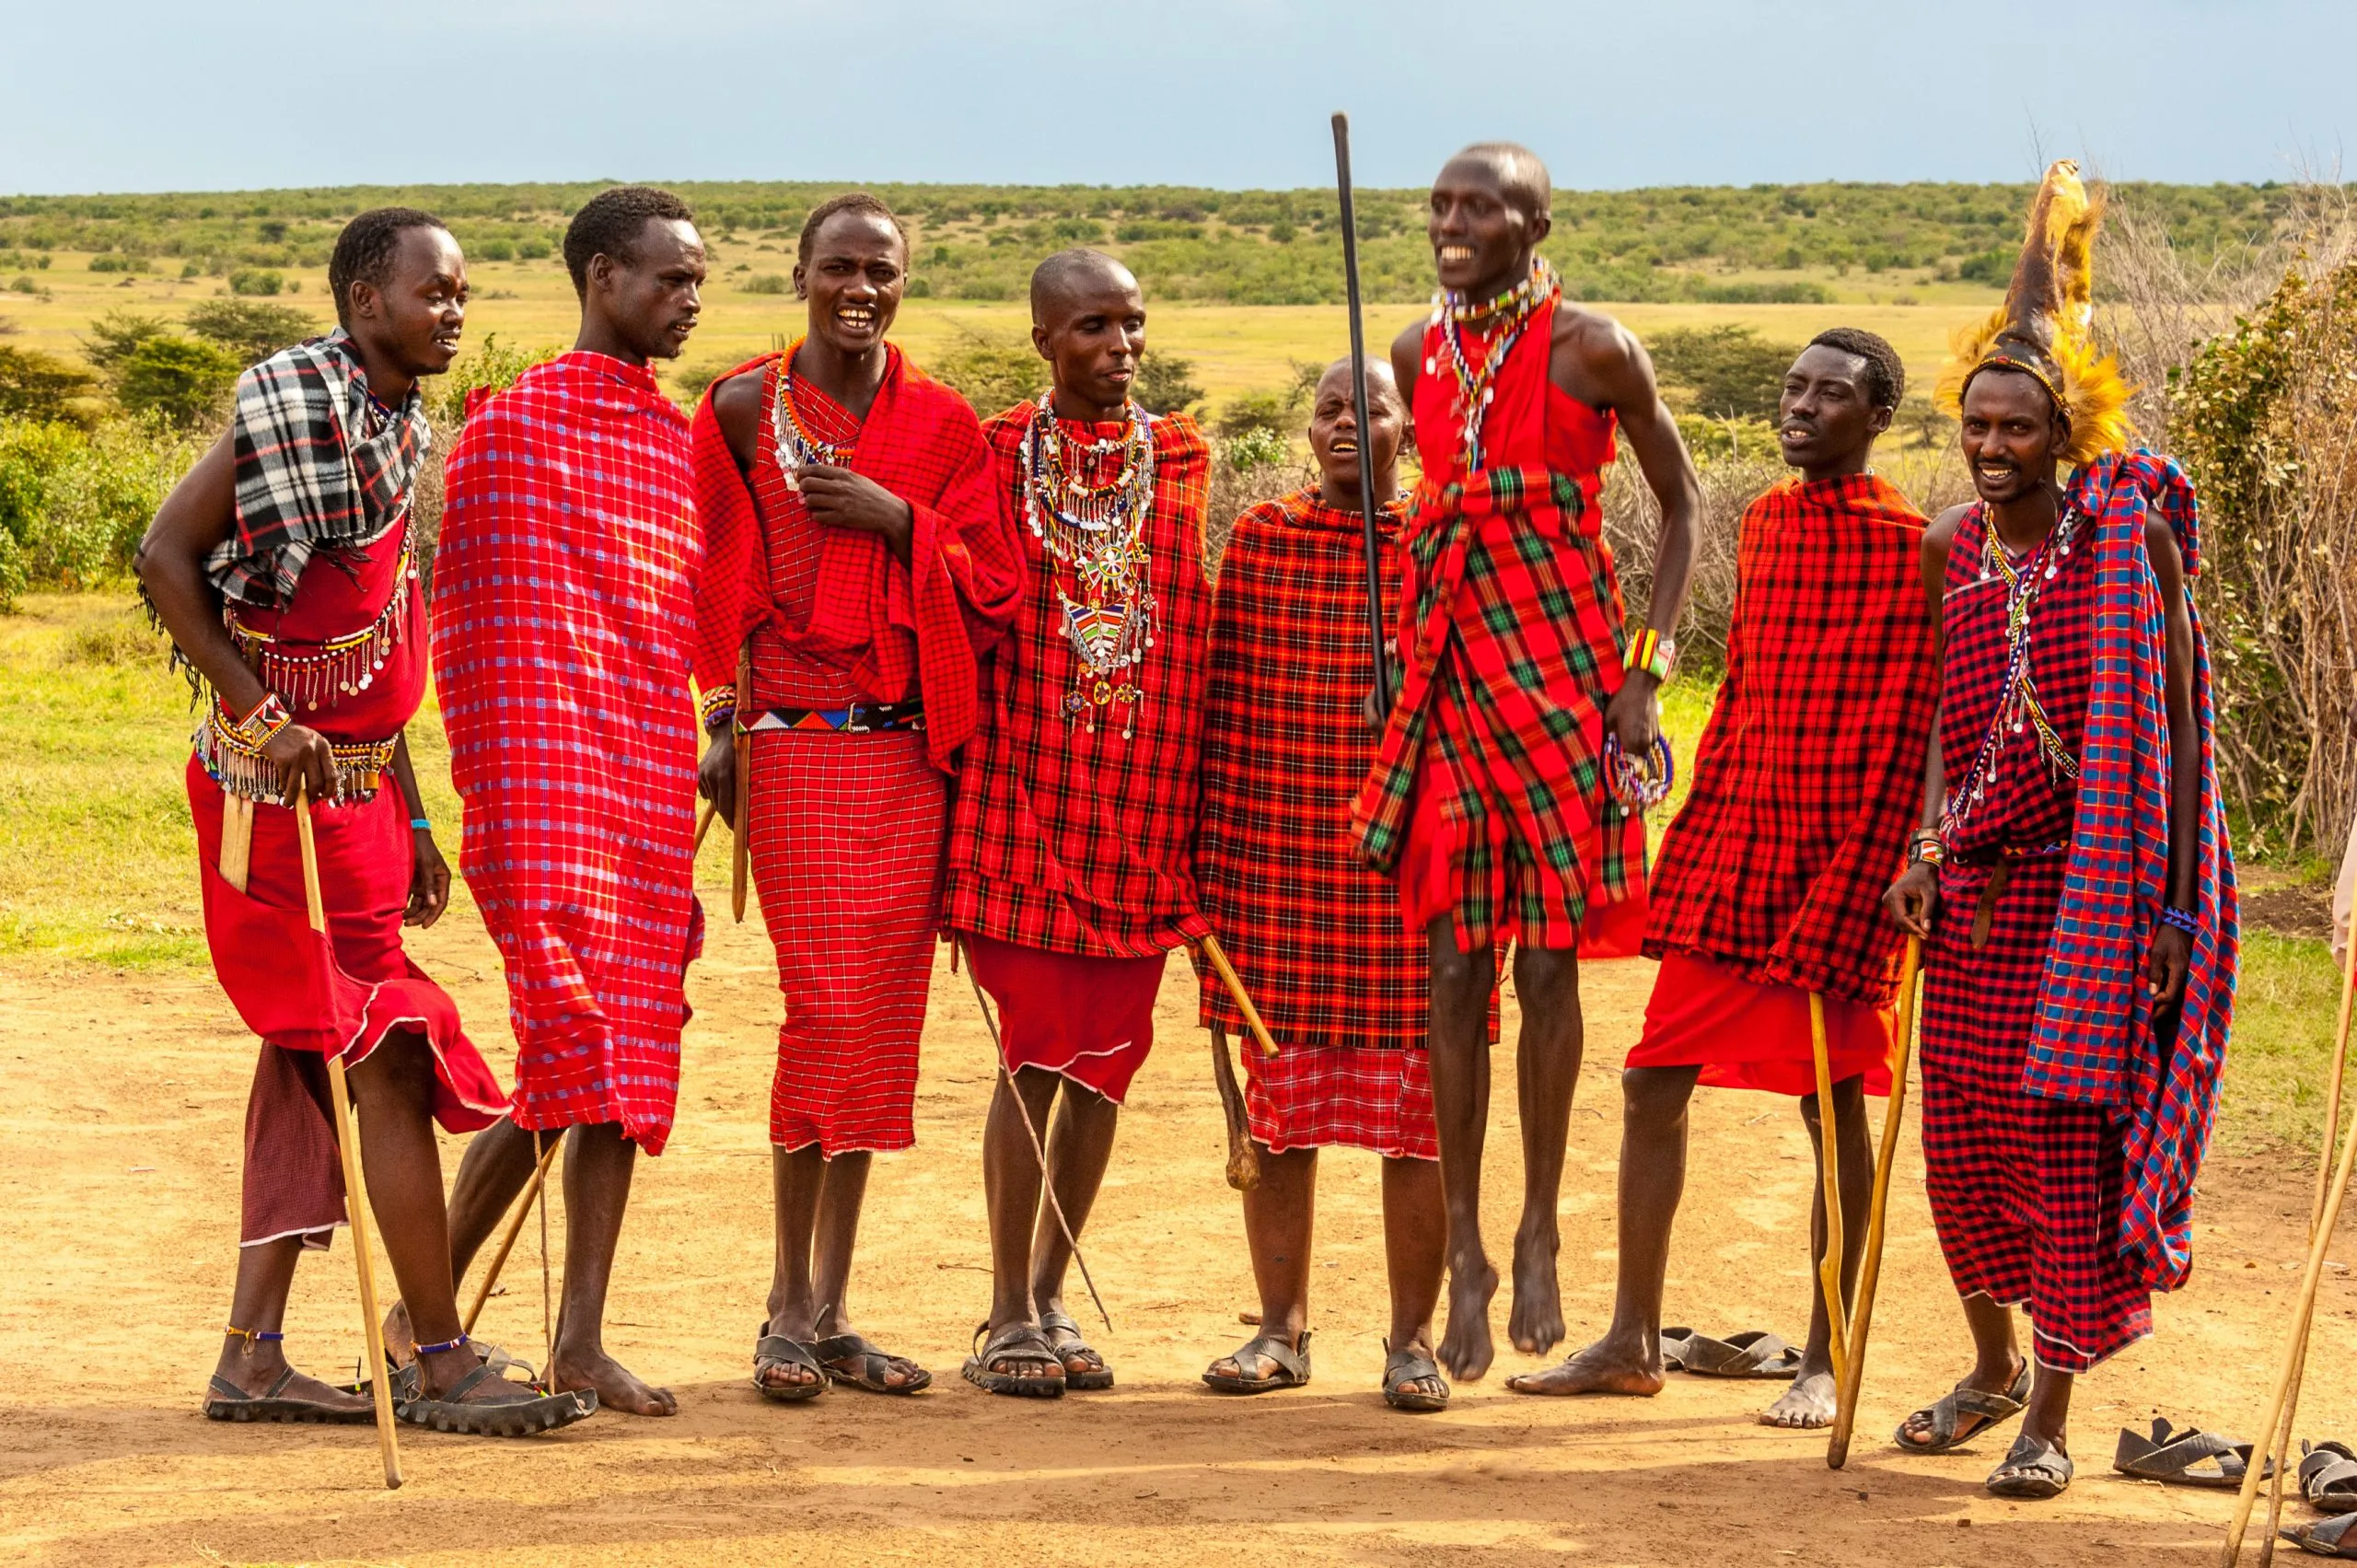 Masai Mara people